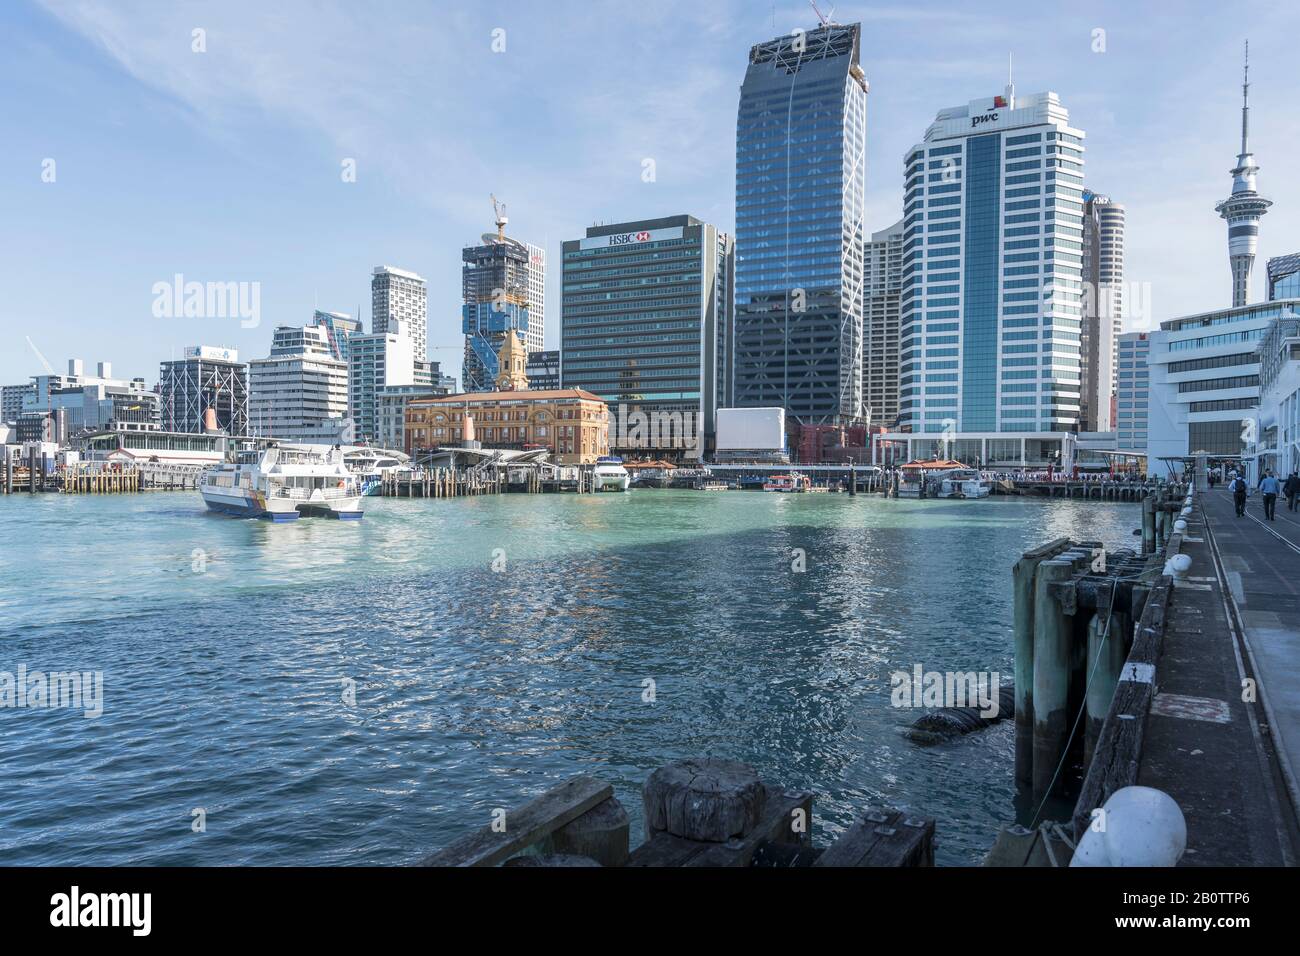 Auckland, NUOVA ZELANDA - 05 novembre 2019: Paesaggio urbano con edifici alti e porto dei traghetti nel fresco centro della città dinamica, girato in piena primavera Foto Stock